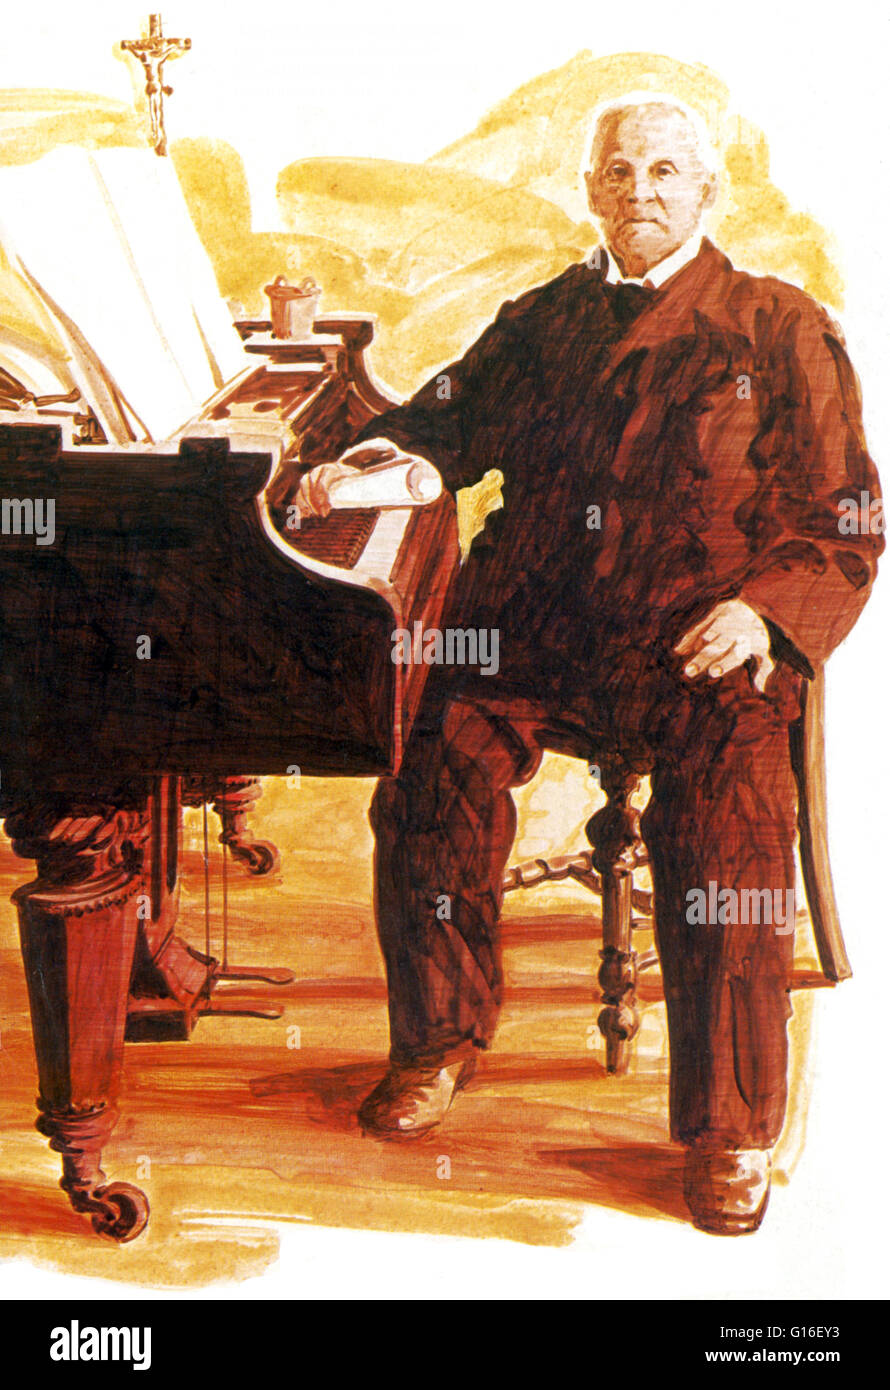 Bruckner à son piano en 1894, deux ans avant sa mort. Anton Bruckner (4 septembre 1824 - 11 octobre 1896) était un compositeur autrichien connu pour ses symphonies, messes, et des motets. Les premiers sont considérés comme emblématiques de l'étape finale de l'Austro-German Banque D'Images